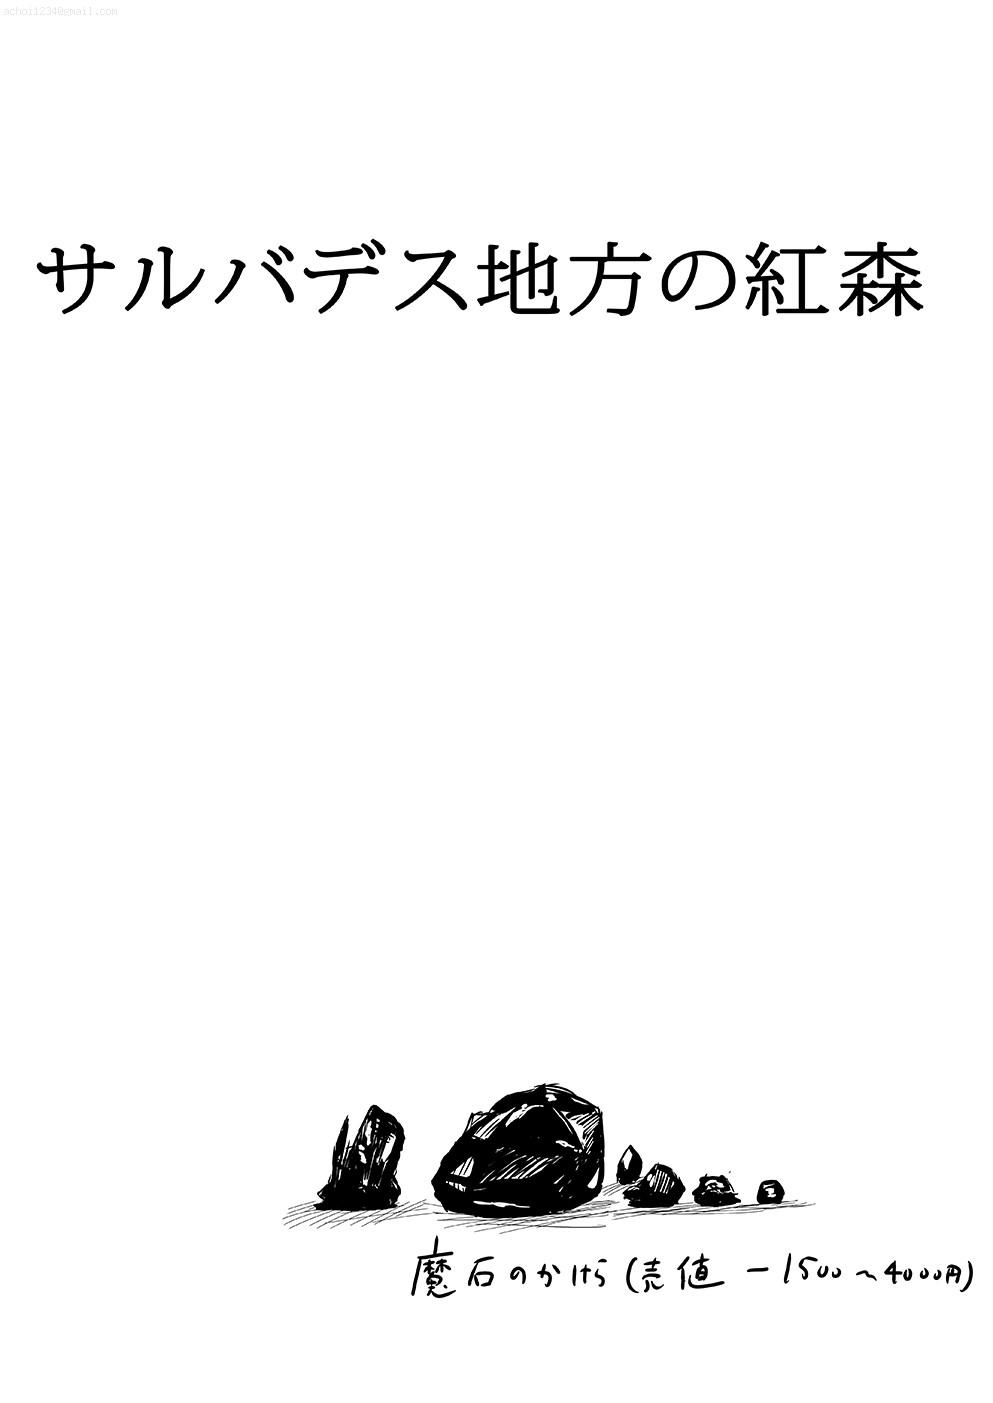 Oiled Sarubadesu Chihou no Akamori One - Page 2